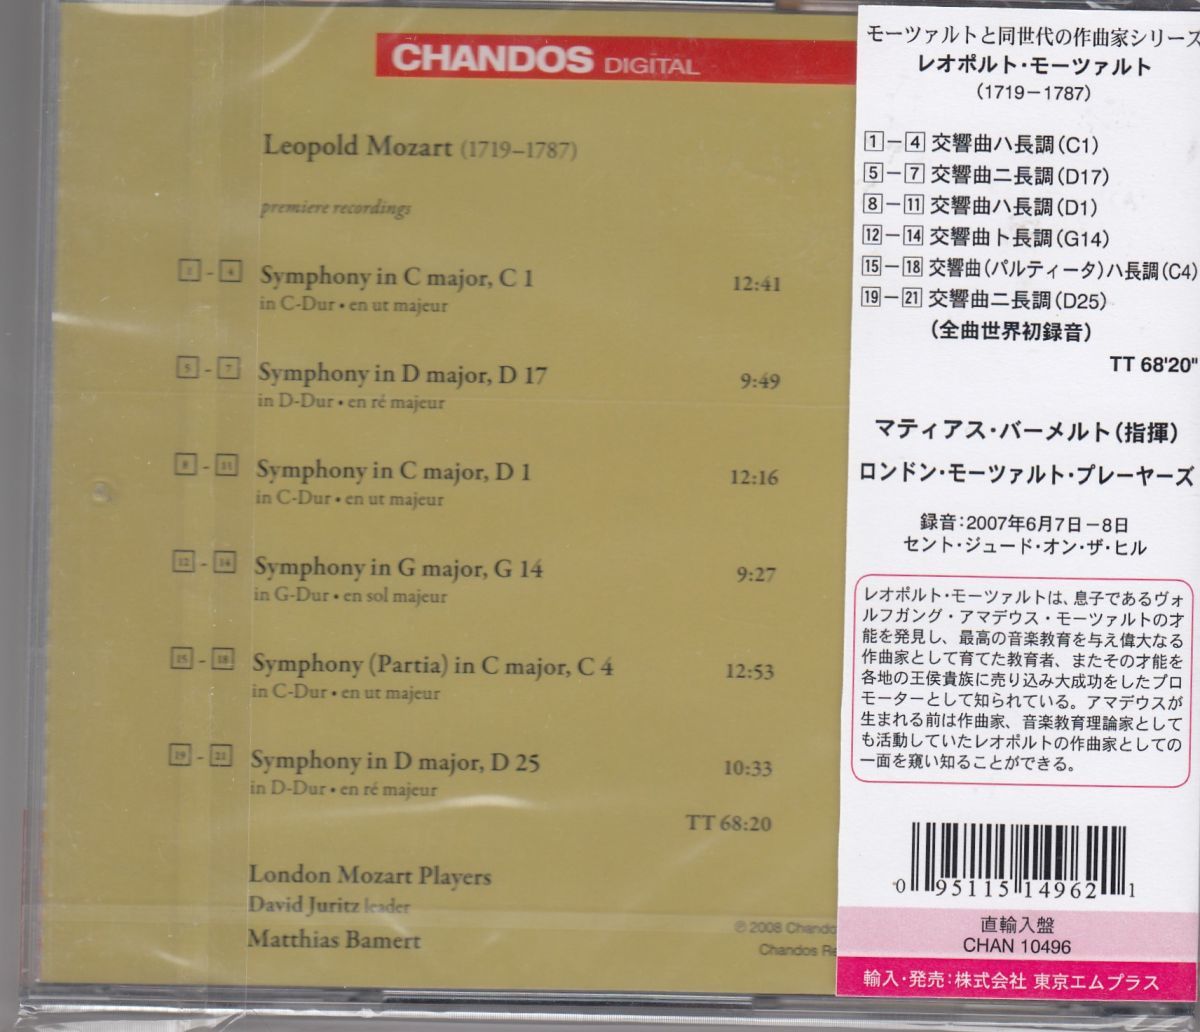 [CD/Chandos]L.モーツァルト:交響曲ハ長調C.1&交響曲ニ長調D.17&交響曲ハ長調D.1他/M.バーメルト&ロンドン・モーツァルト・プレイヤーズ_画像2